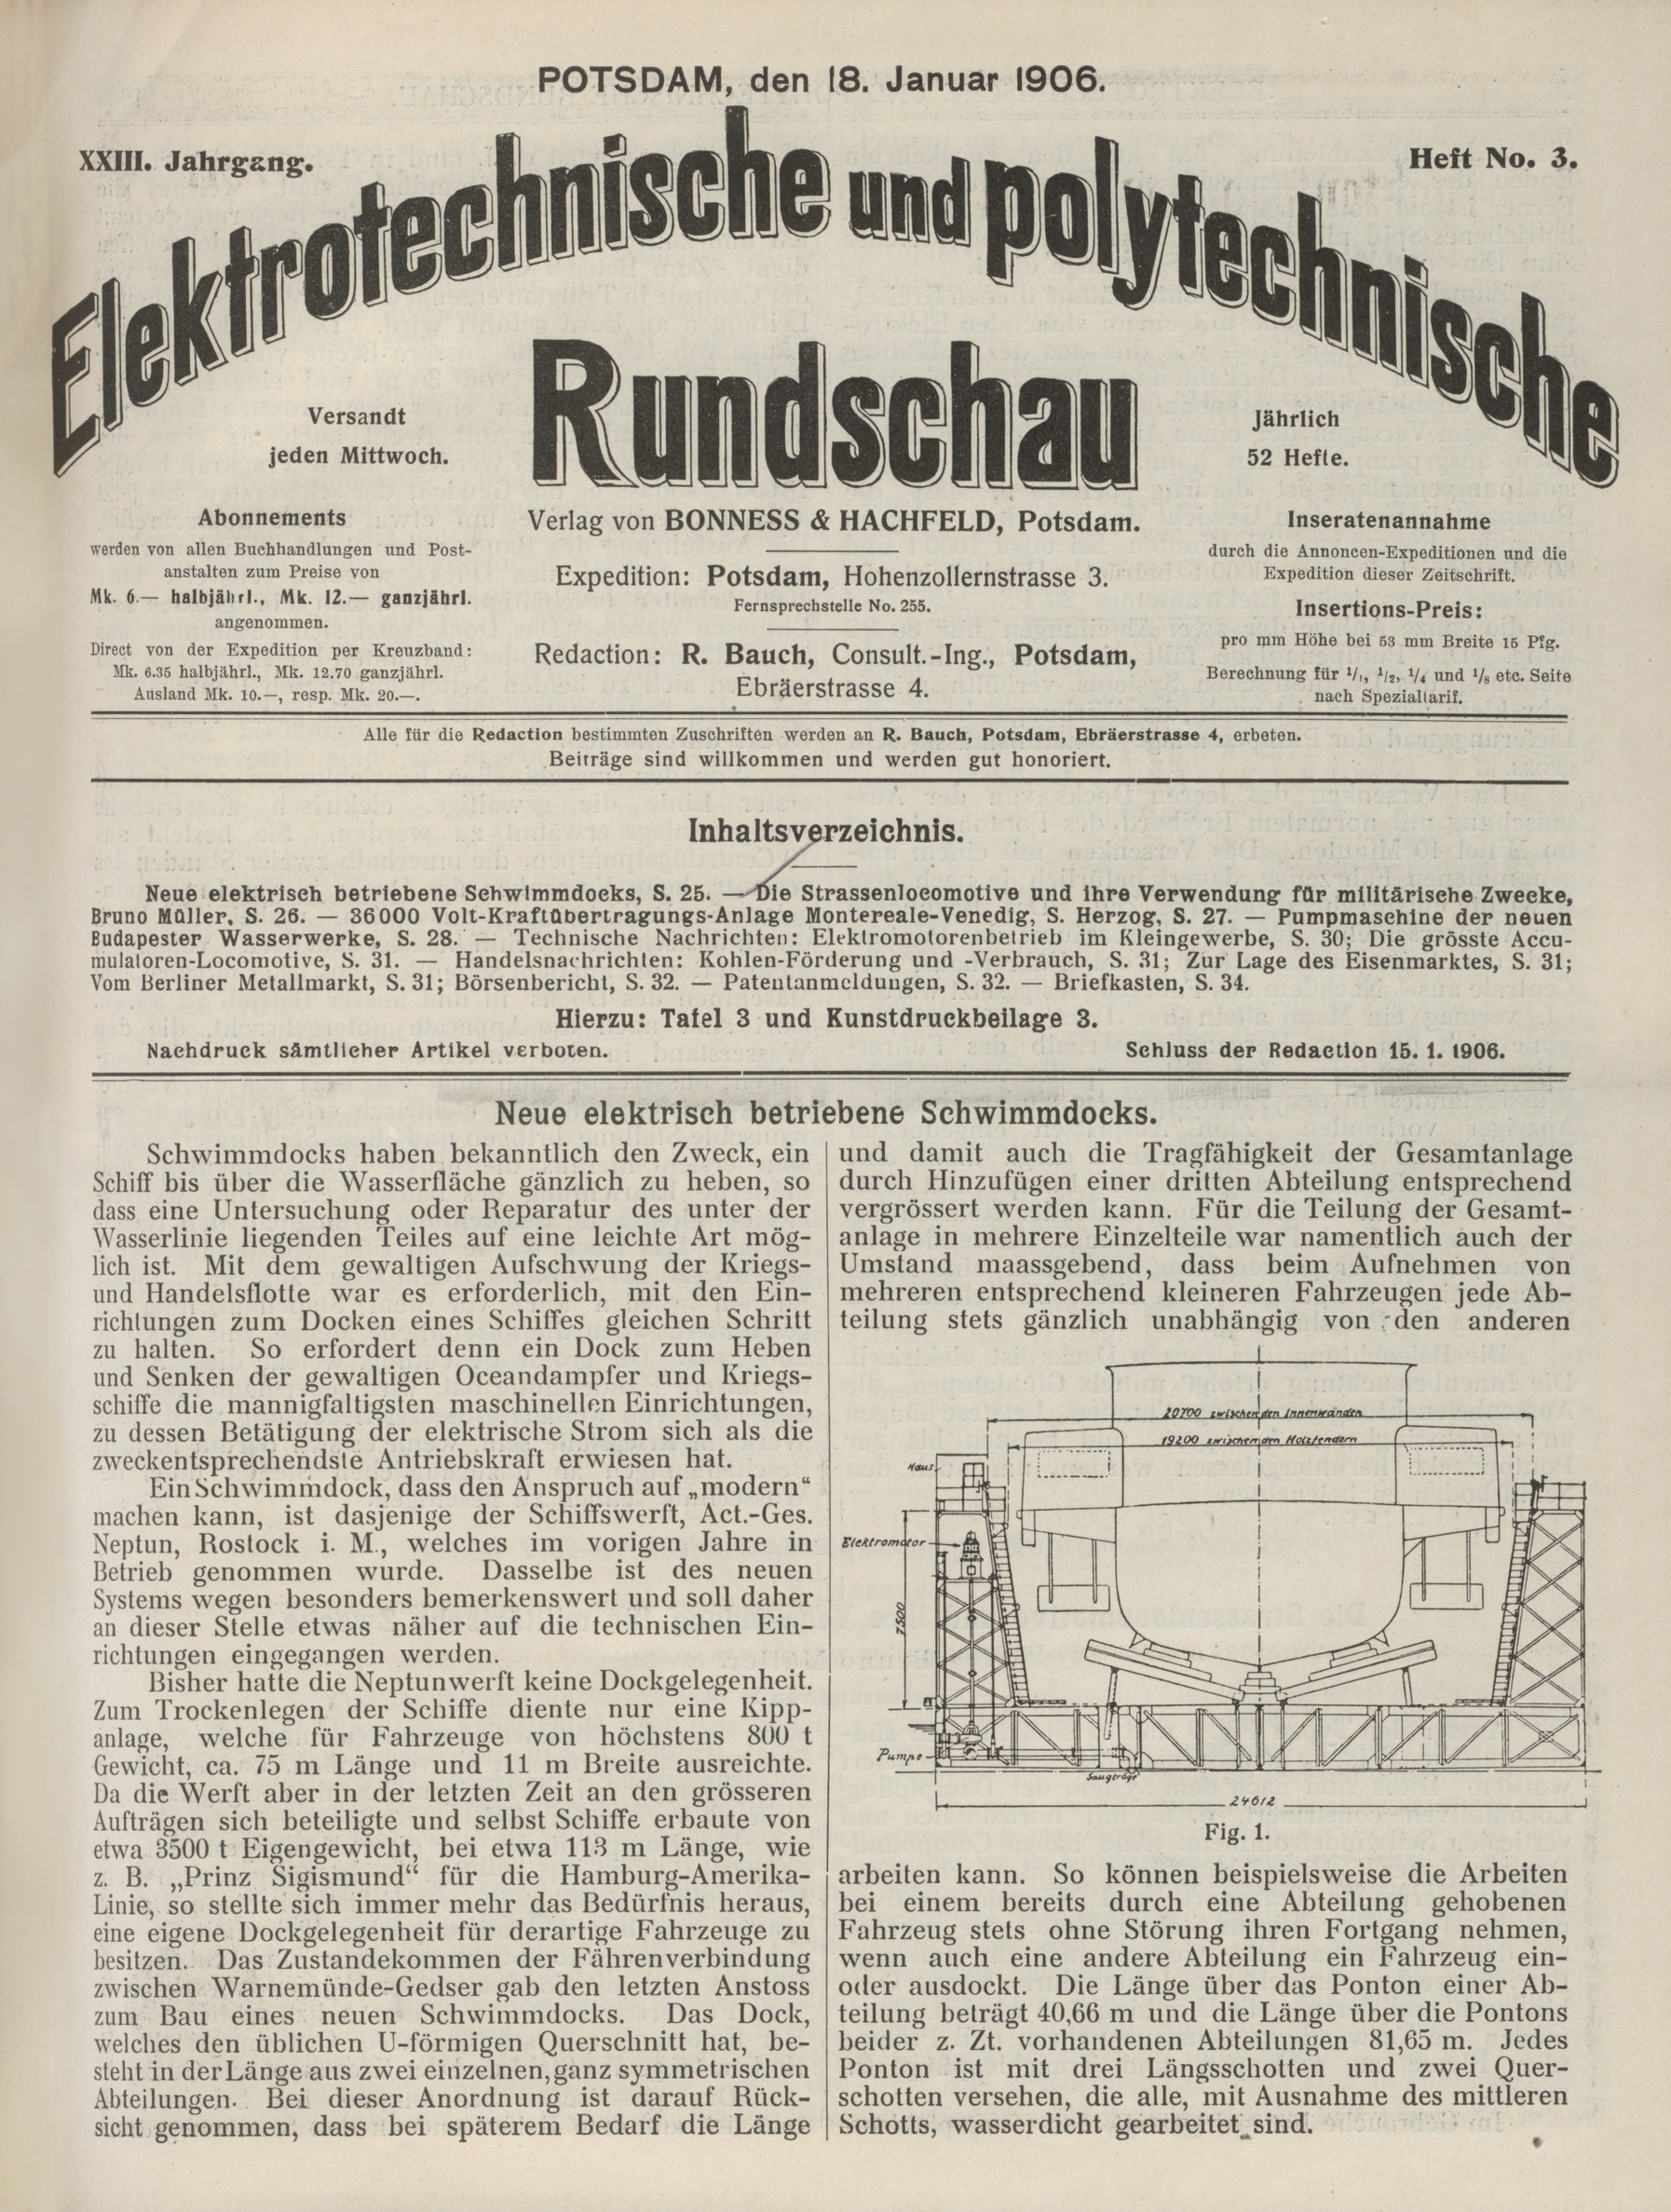 Elektrotechnische und polytechnische Rundschau, XXIII. Jahrgang, Heft No. 3